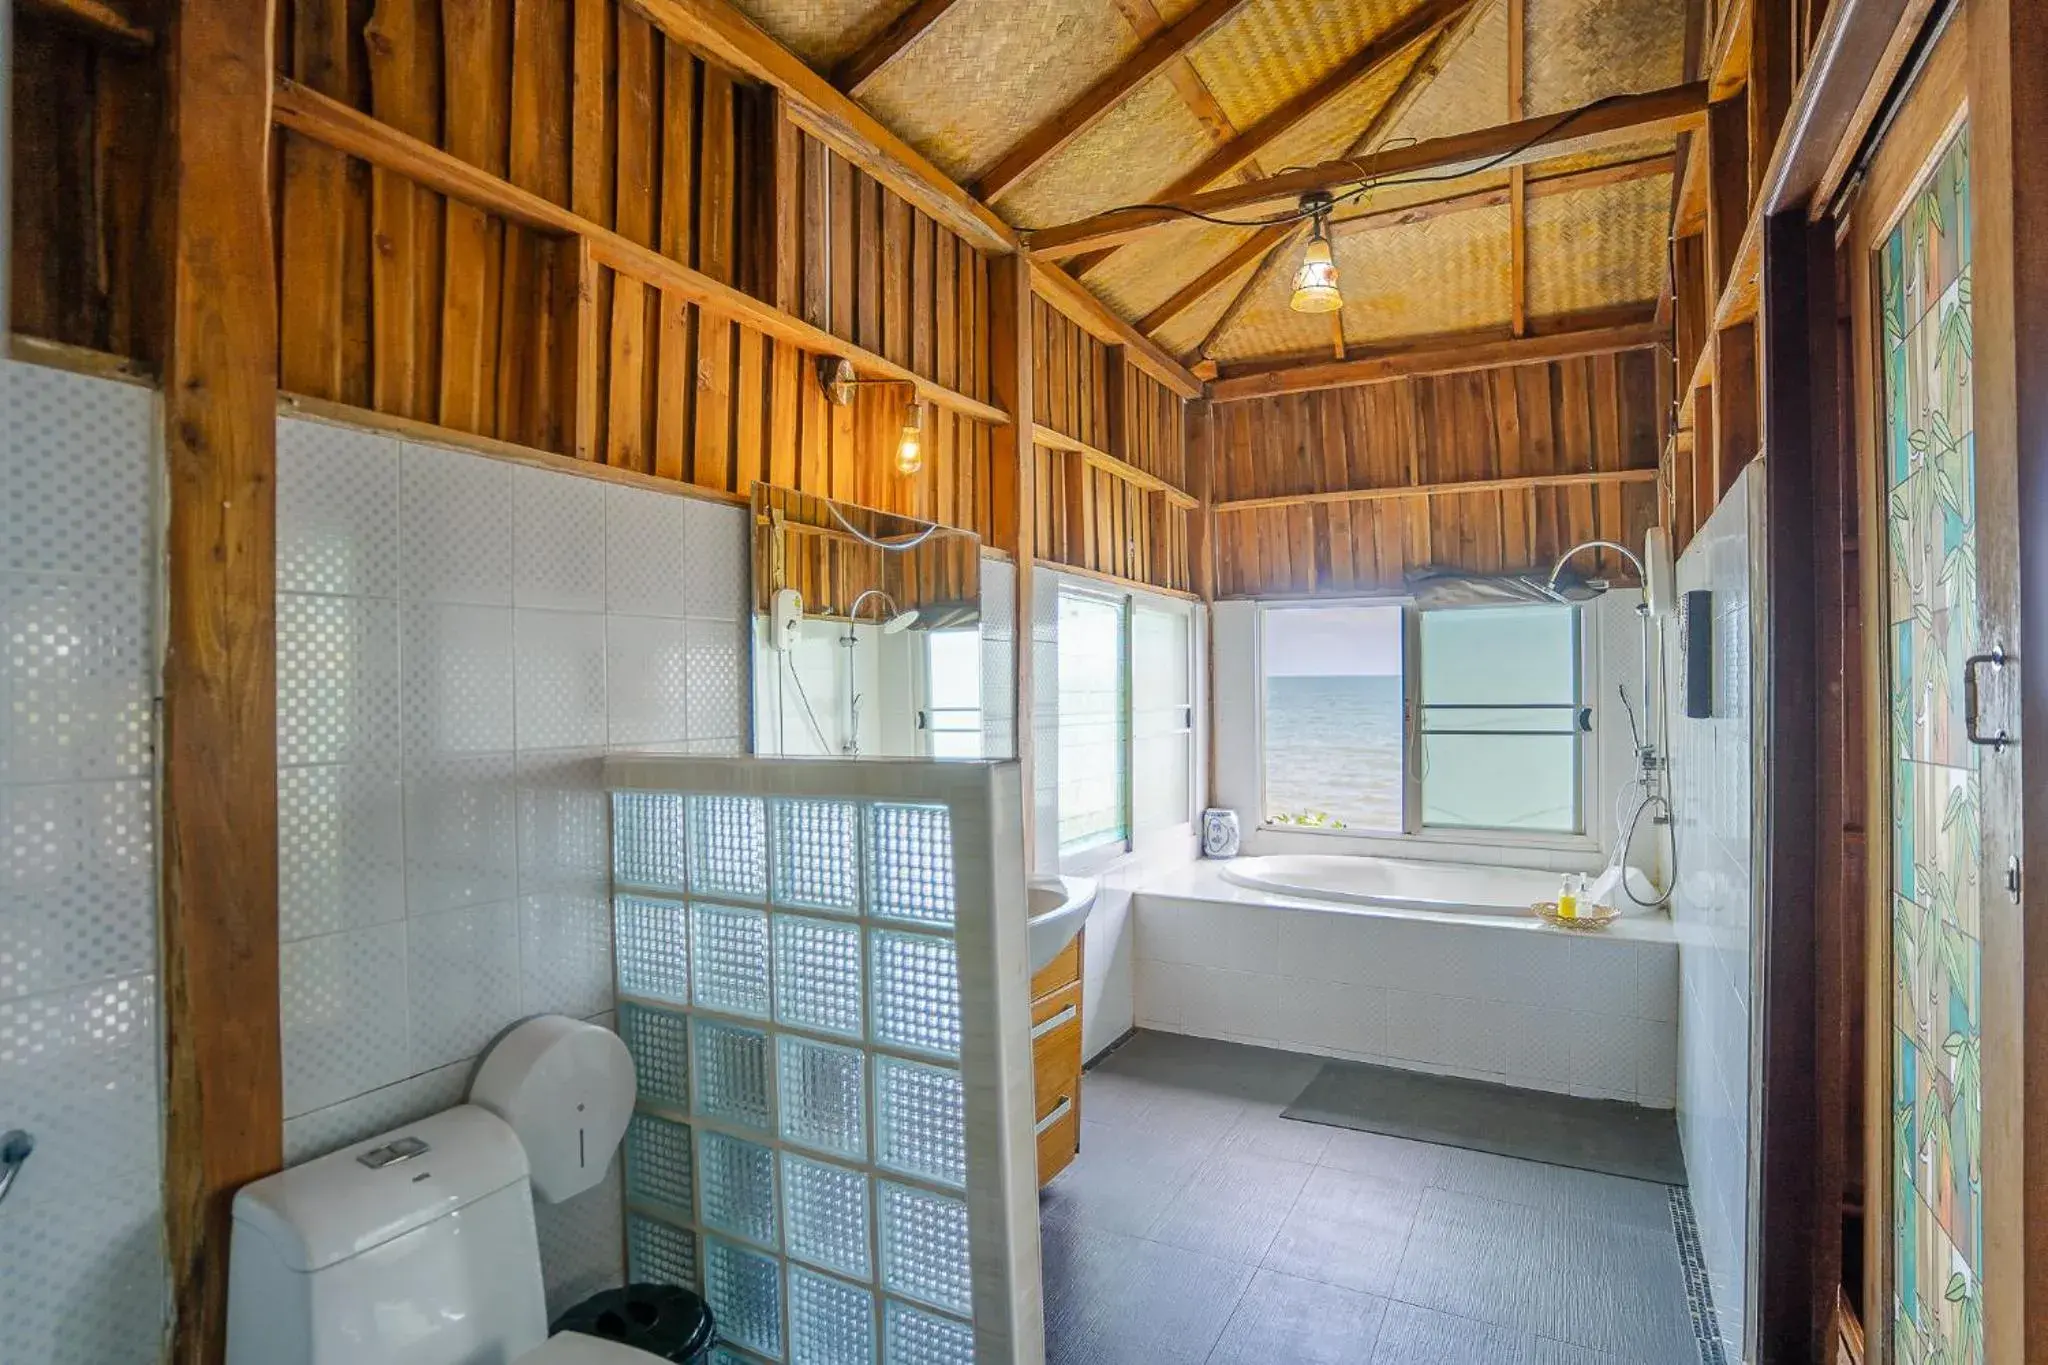 Bathroom in Koh Jum Resort